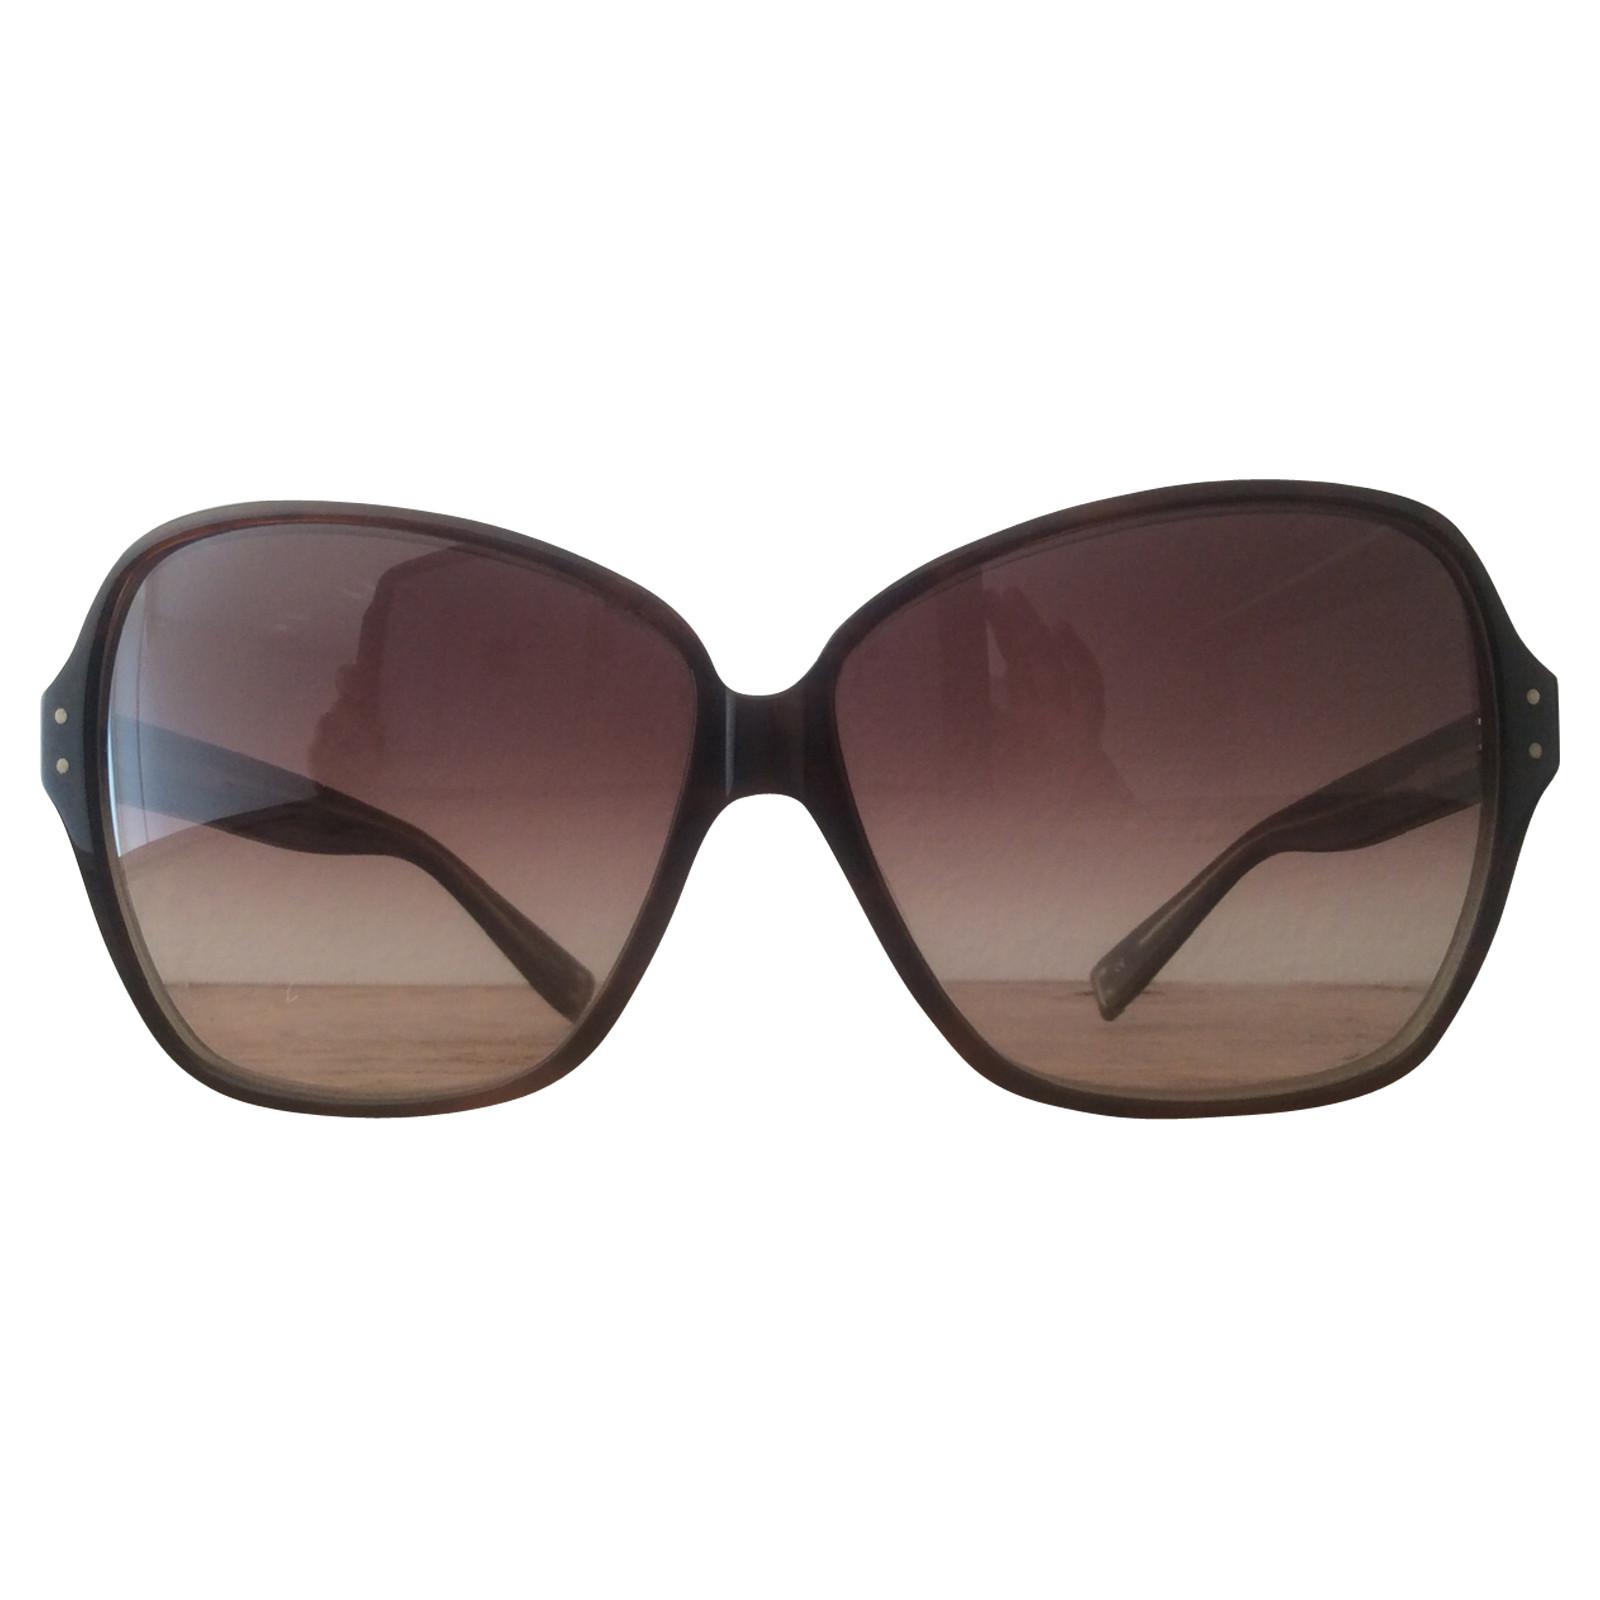 Oliver Peoples Sonnenbrille in Braun - Second Hand Oliver Peoples  Sonnenbrille in Braun gebraucht kaufen für 99€ (7540255)